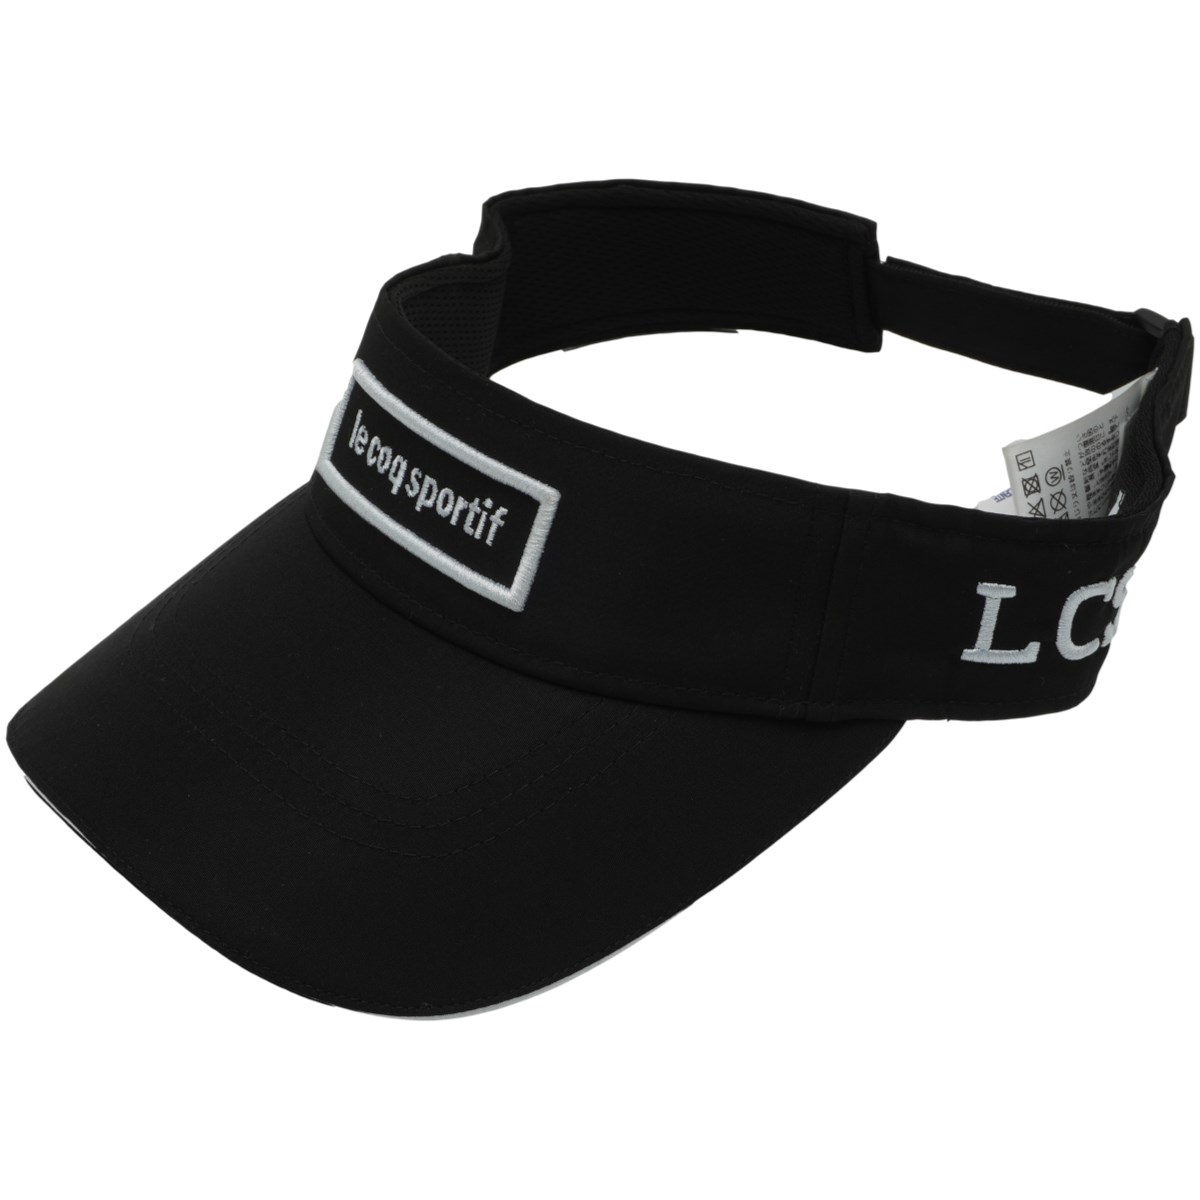 「ルコックゴルフ エコシンプルロゴサンバイザー 」（帽子）- ゴルフ(GOLF)用品のネット通販